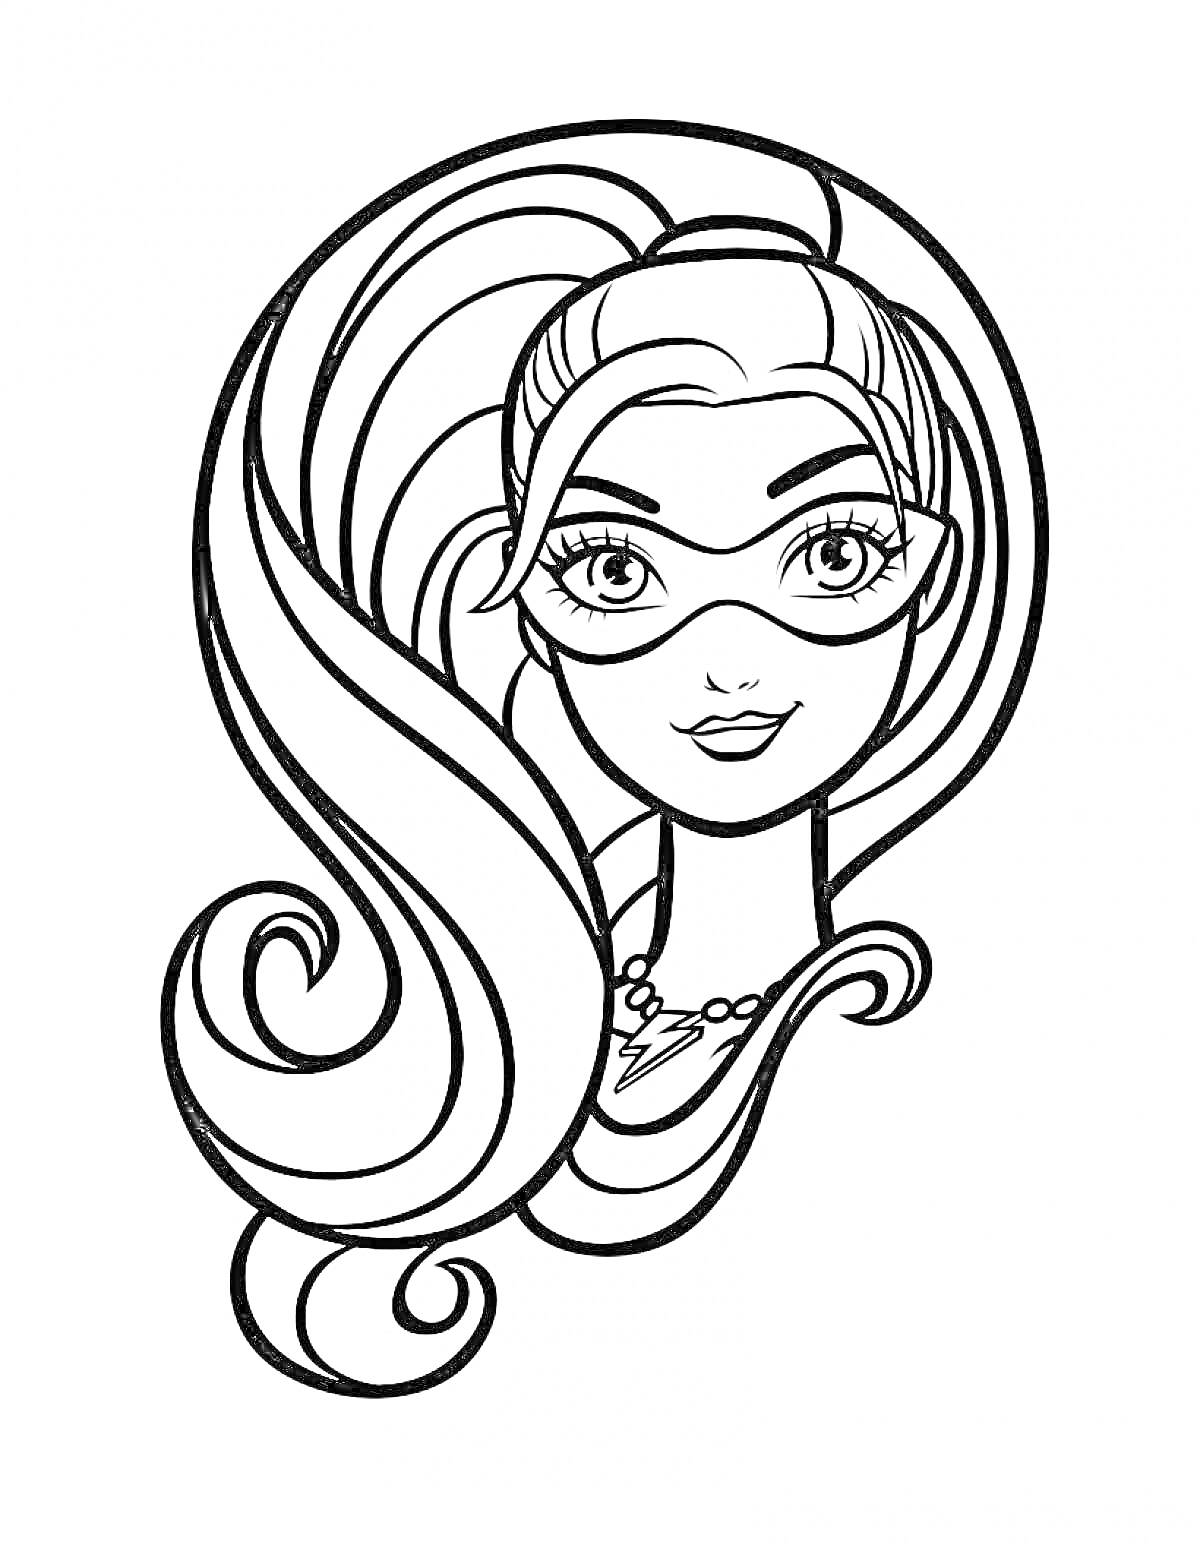 Раскраска Барби Супер Принцесса, портрет с длинными волосами, в маске и ожерелье